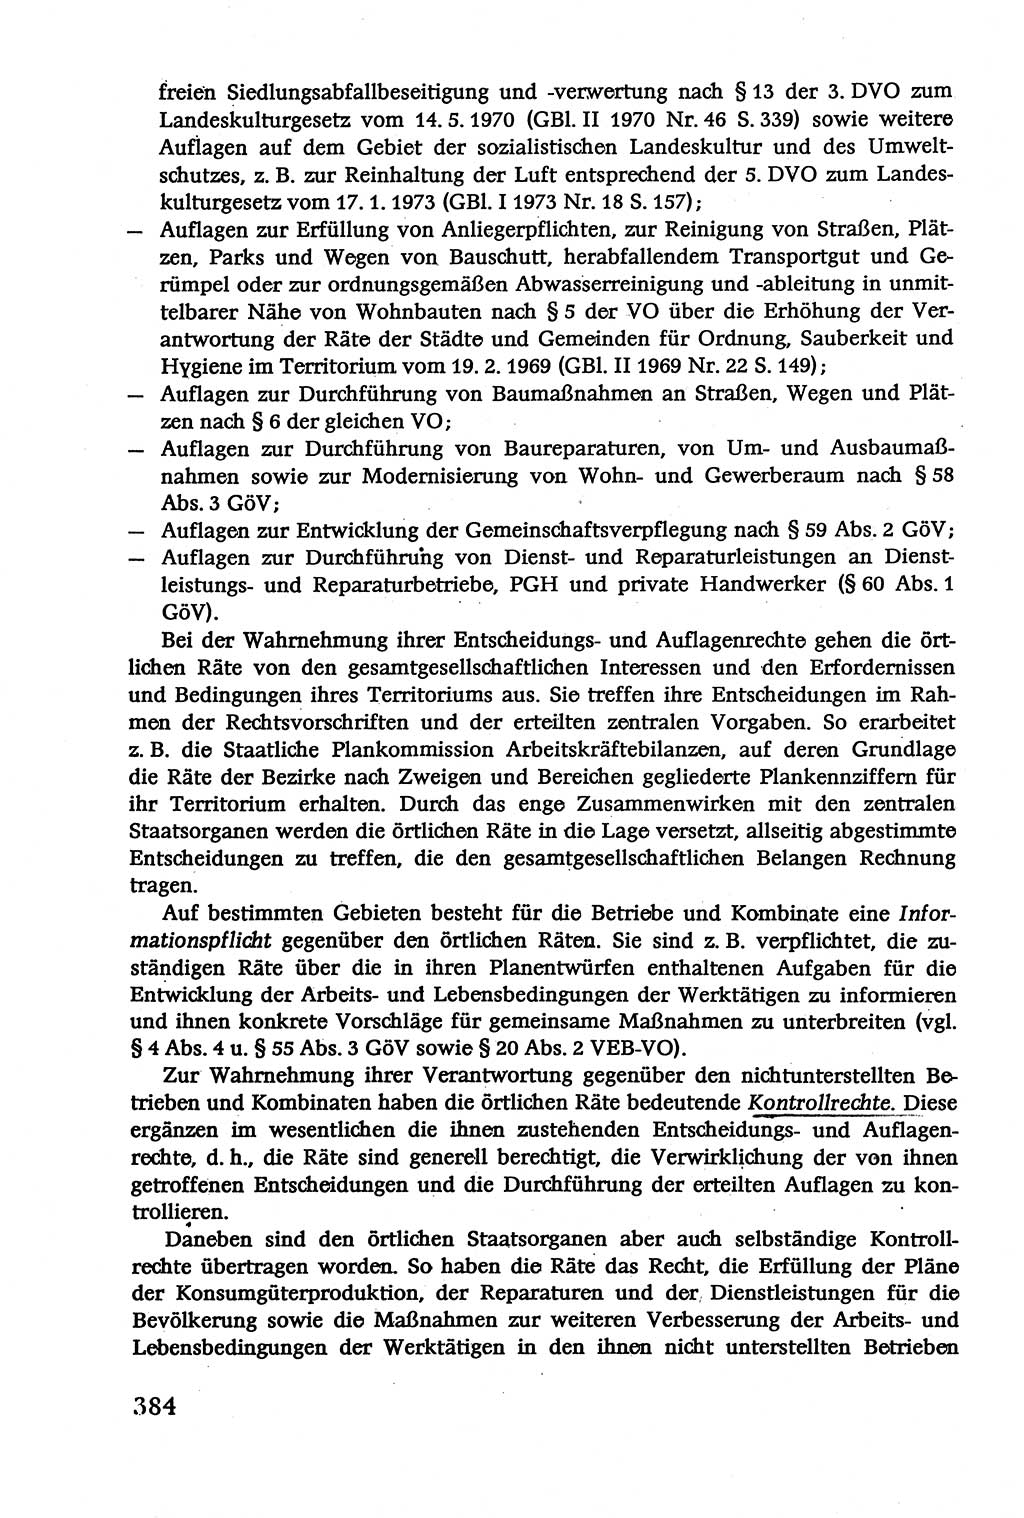 Verwaltungsrecht [Deutsche Demokratische Republik (DDR)], Lehrbuch 1979, Seite 384 (Verw.-R. DDR Lb. 1979, S. 384)